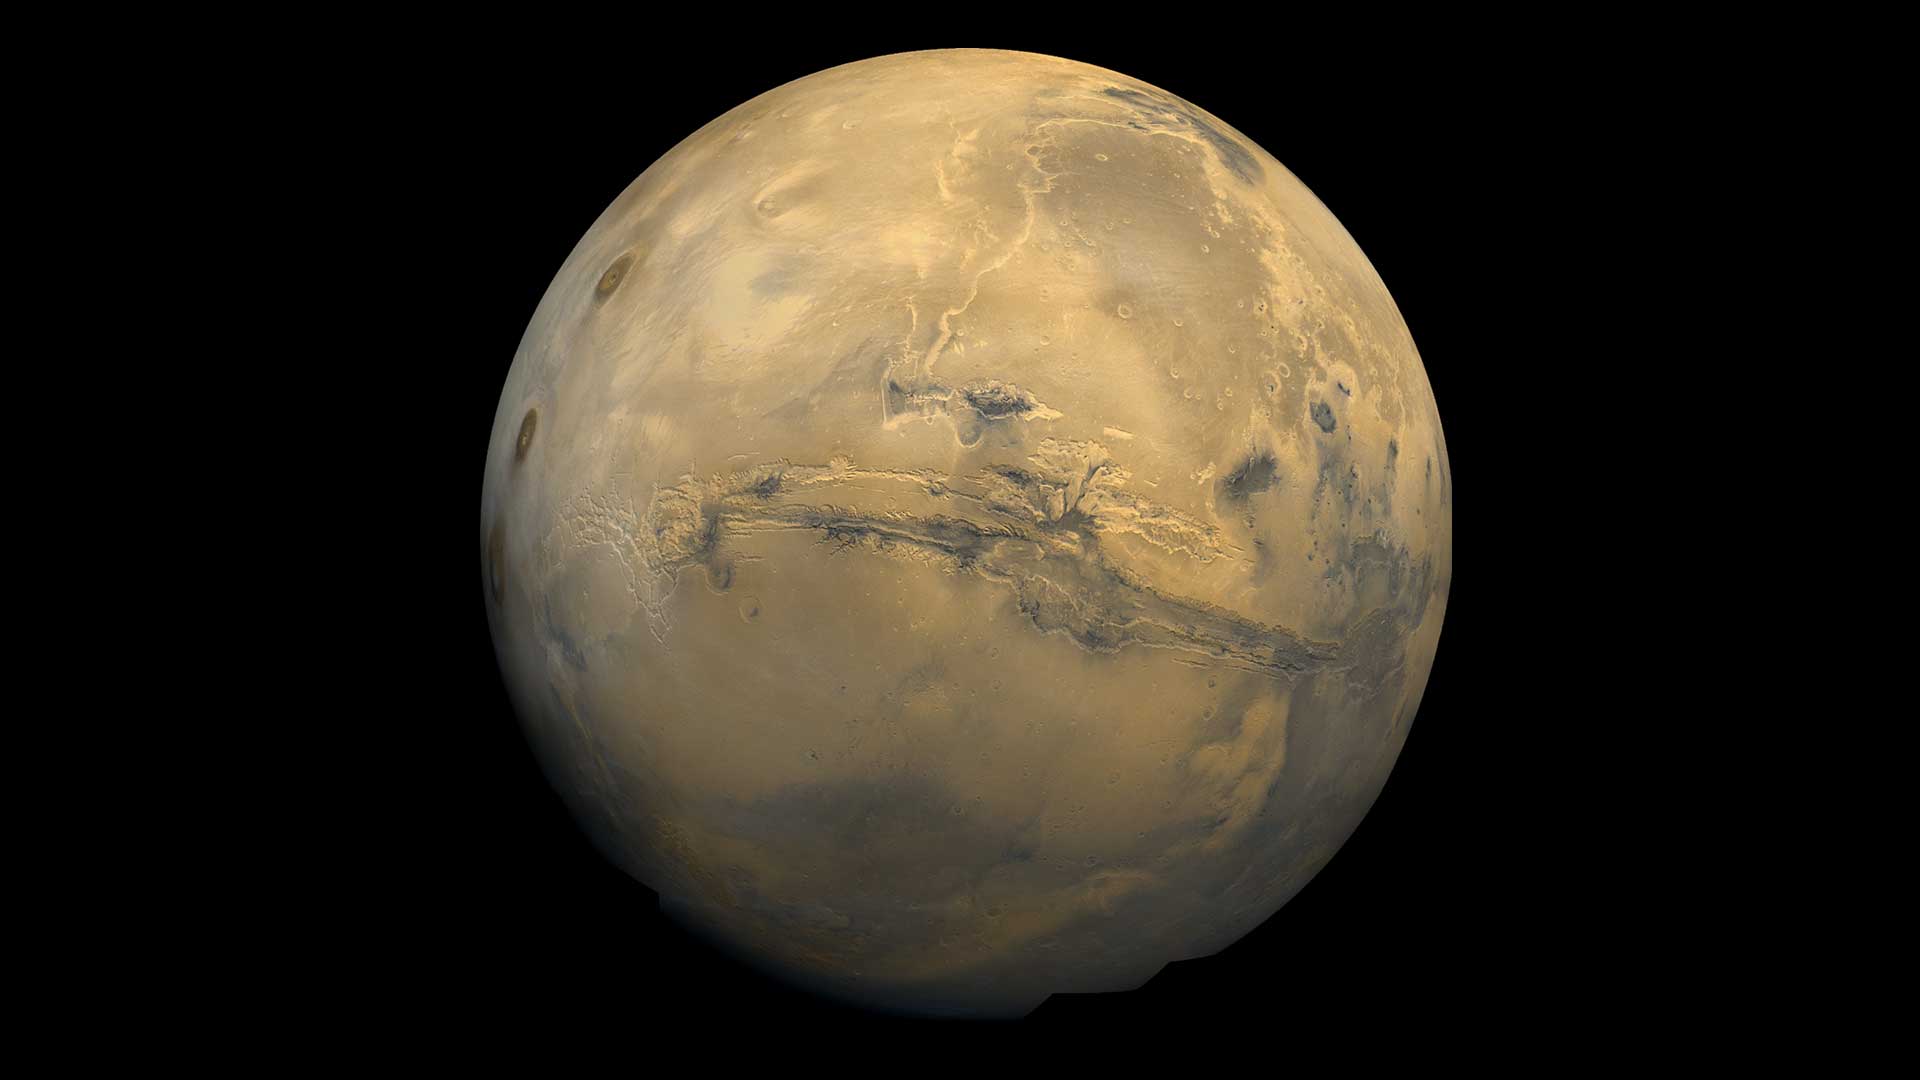 Marte è di colore bruno-rossastro in questa immagine ripresa da una navicella spaziale. Uno squarcio profondo è visibile al centro del pianeta.